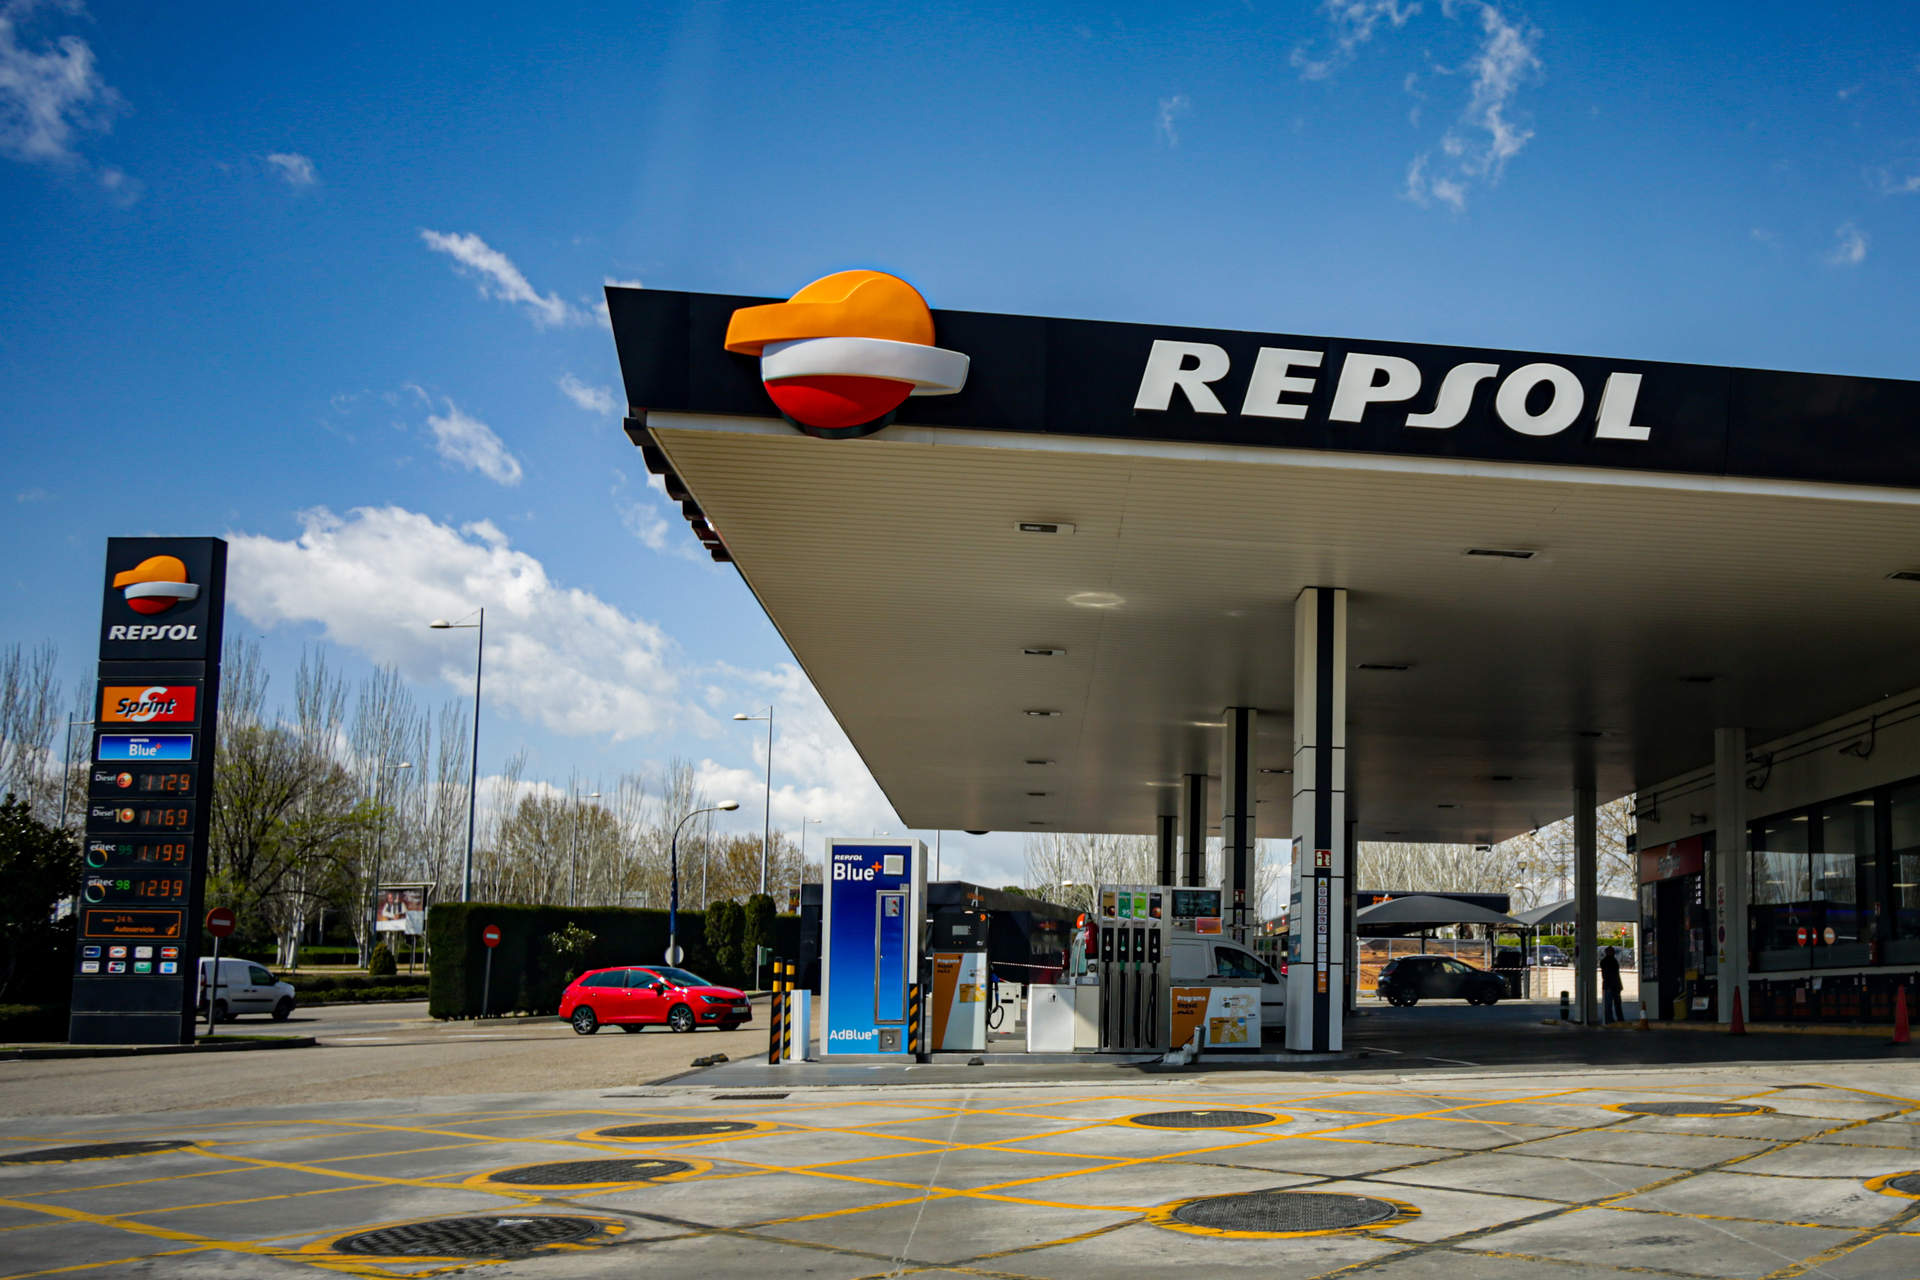 Gasolinera de Repsol ubicada en Madrid.